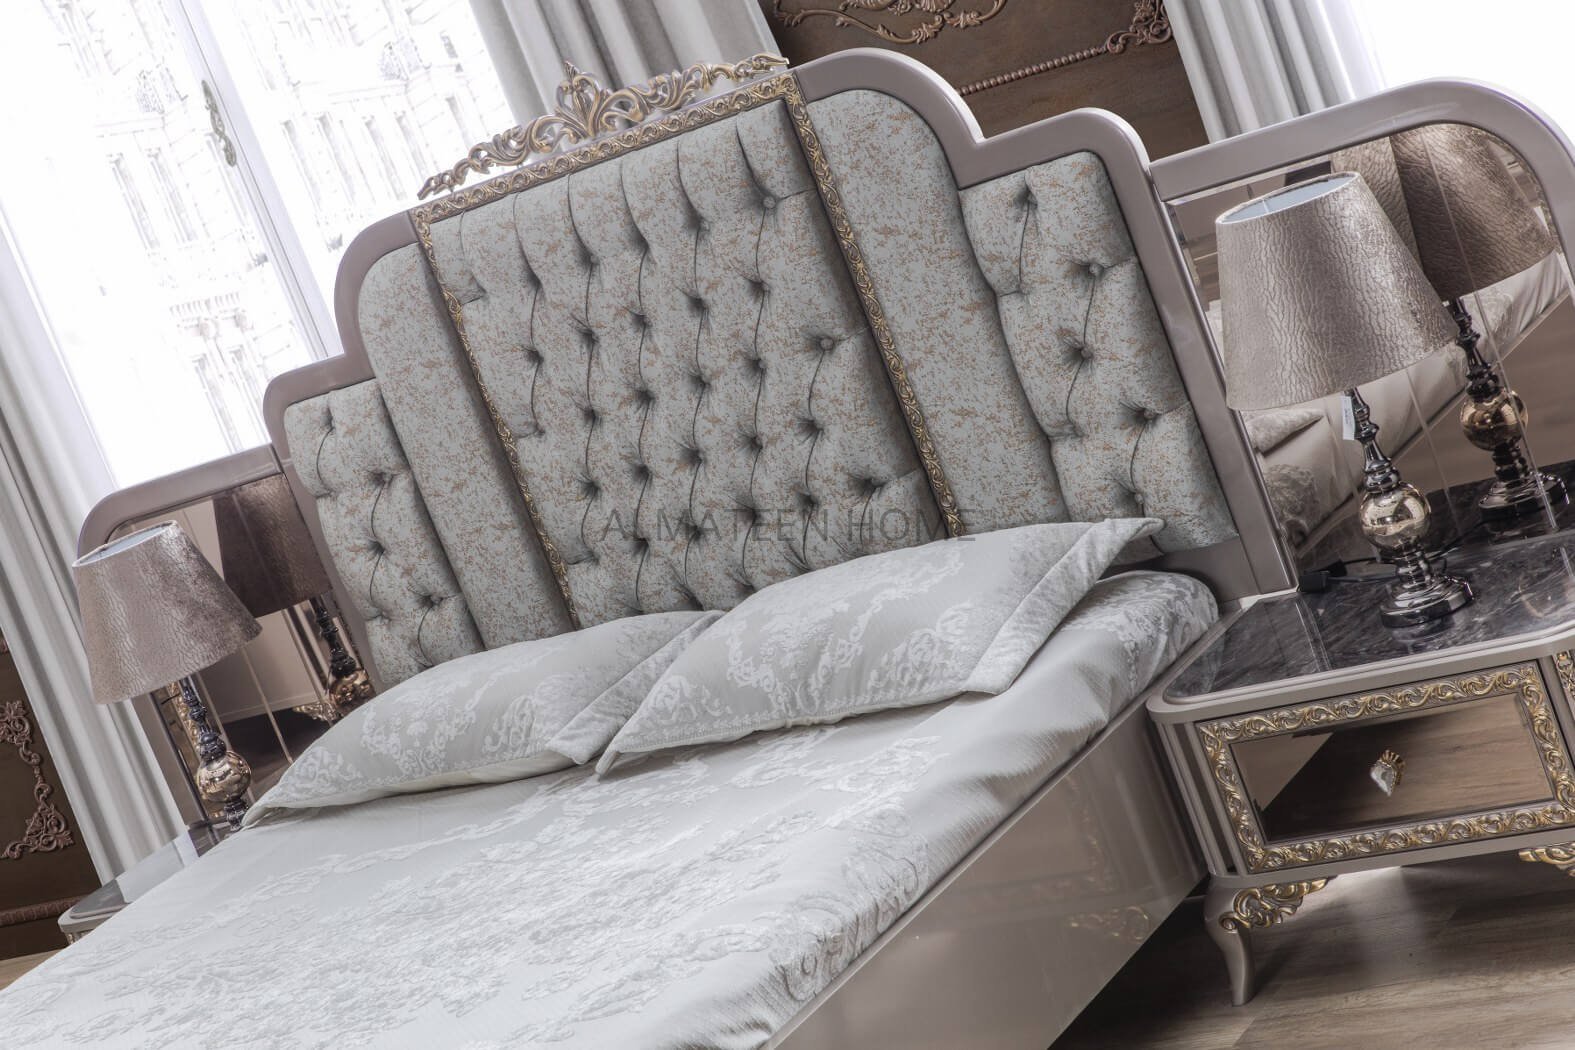 safir-bedroom-set-with-king-size-bed-dresser-sliding-wardrobe-and-side-tables-turkish-5- AL-Mateen Home